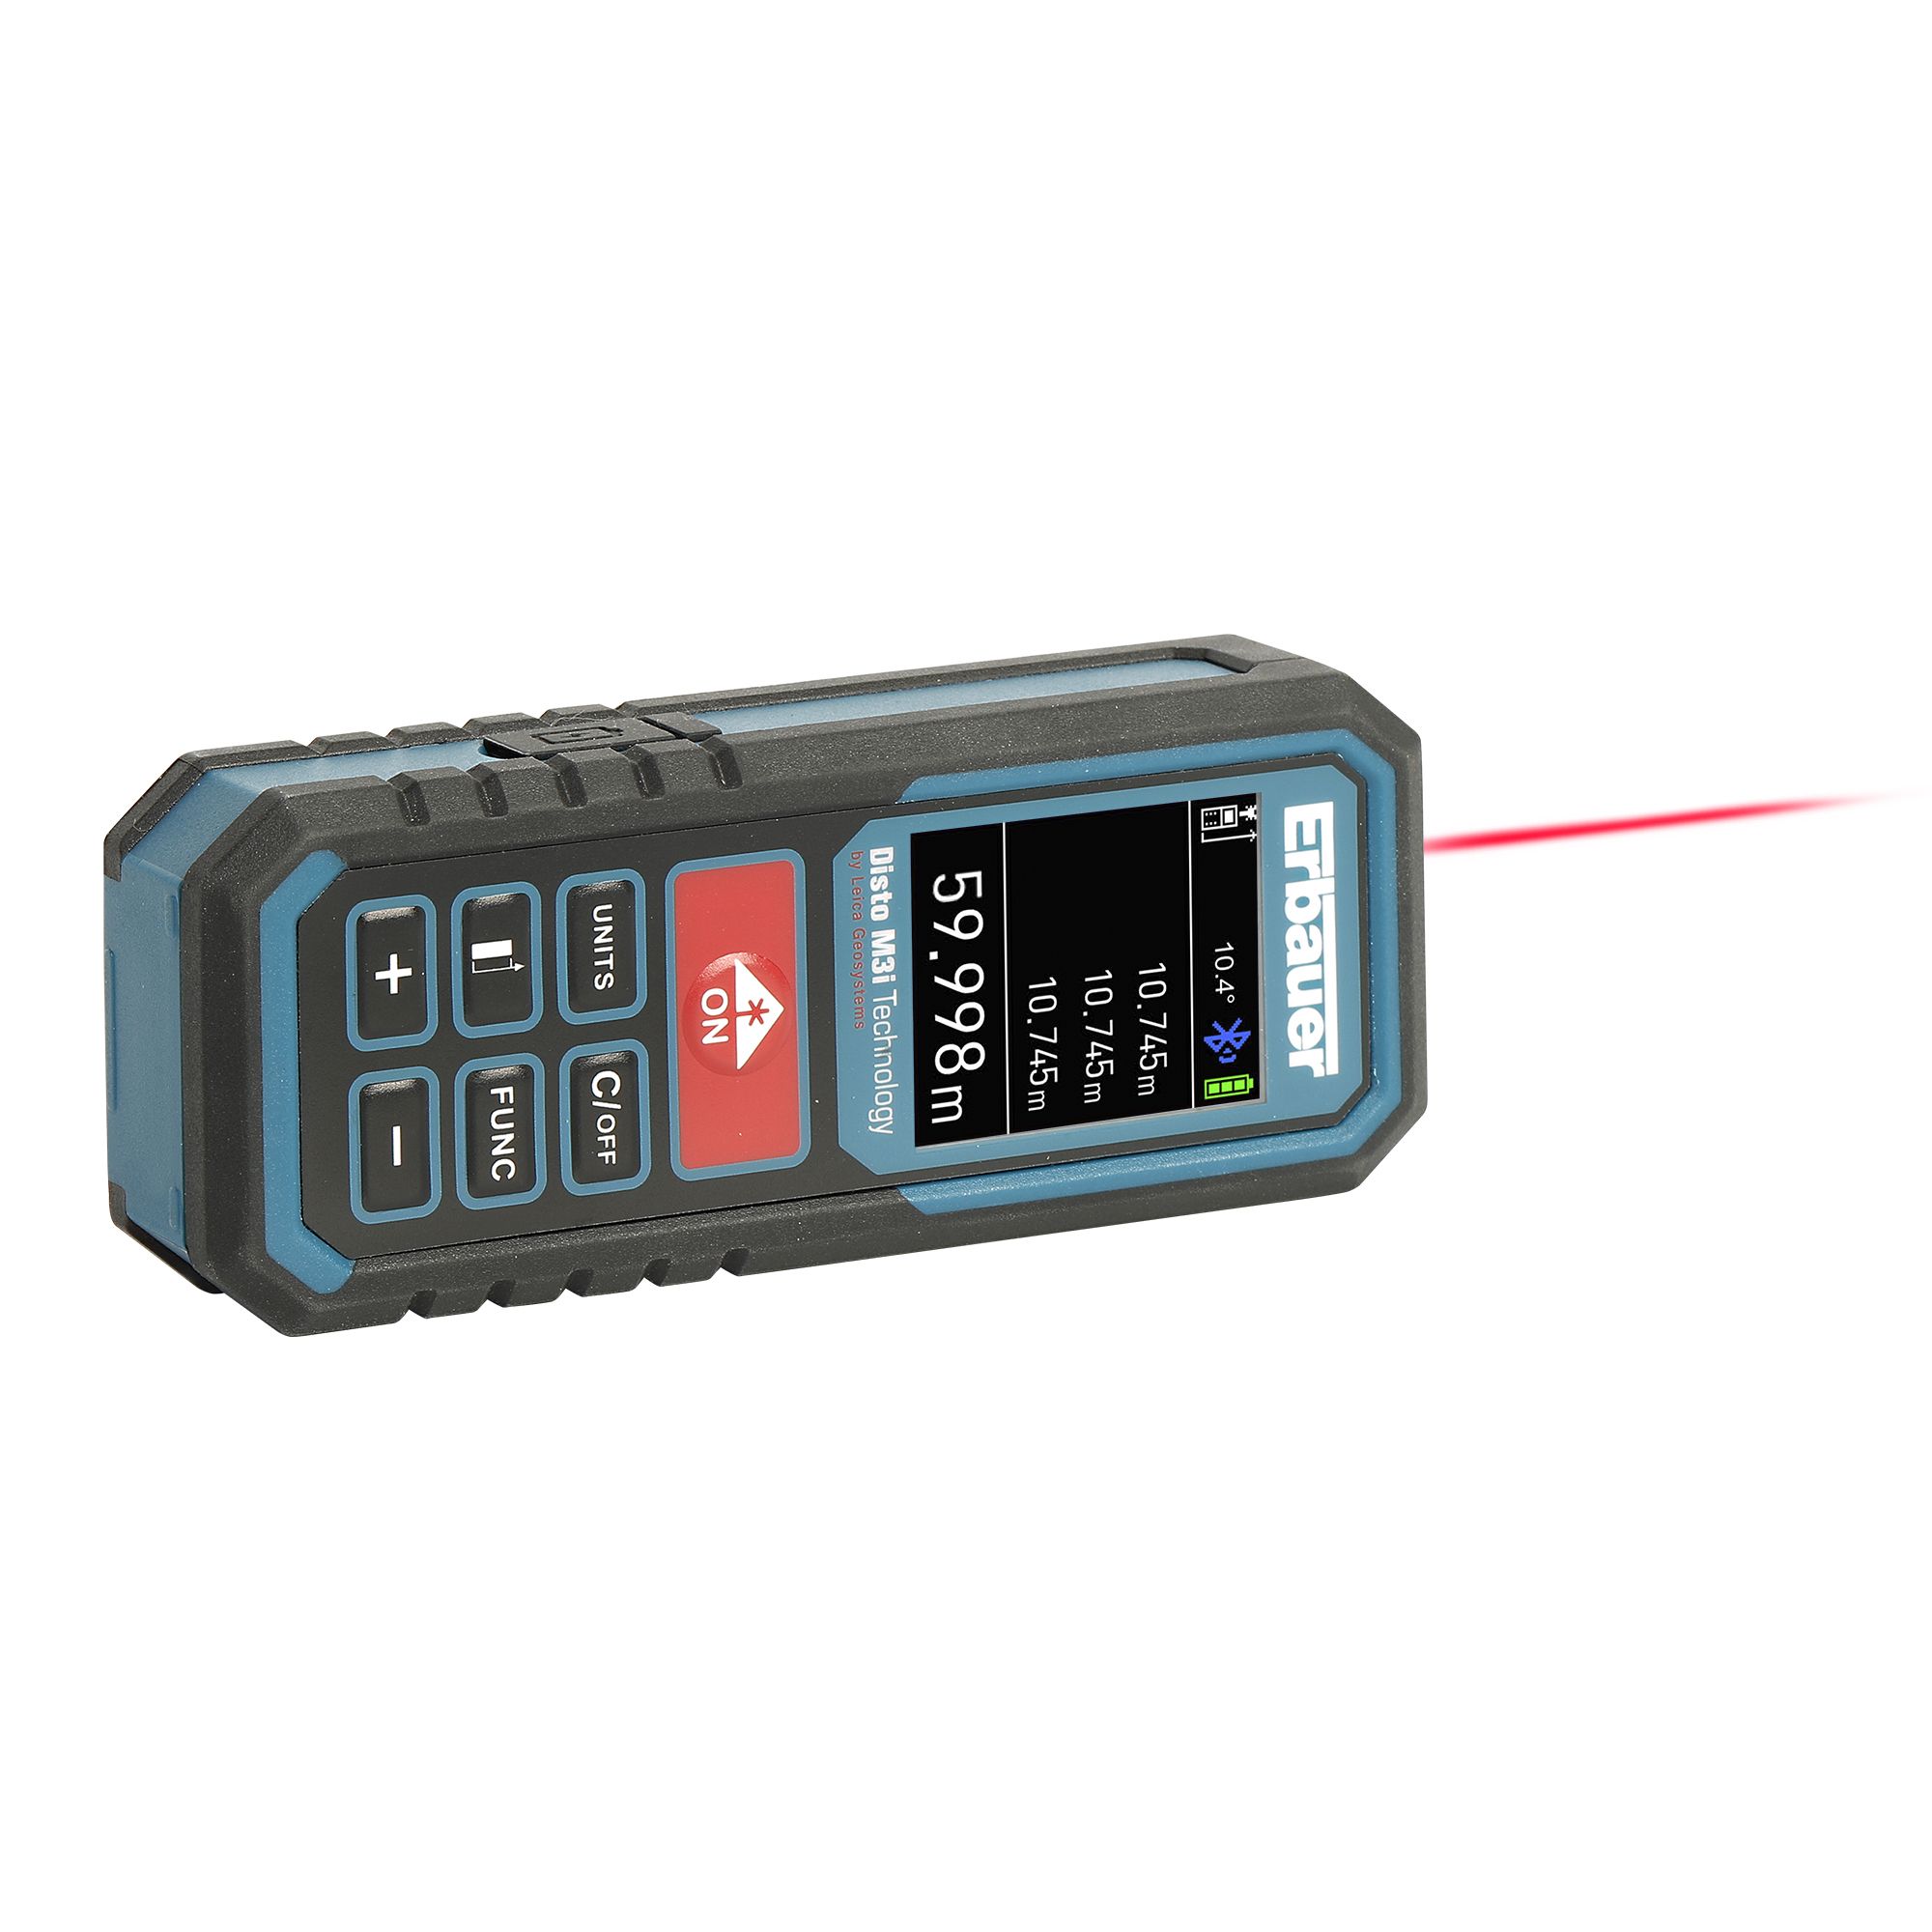 60m Laser distance measurer